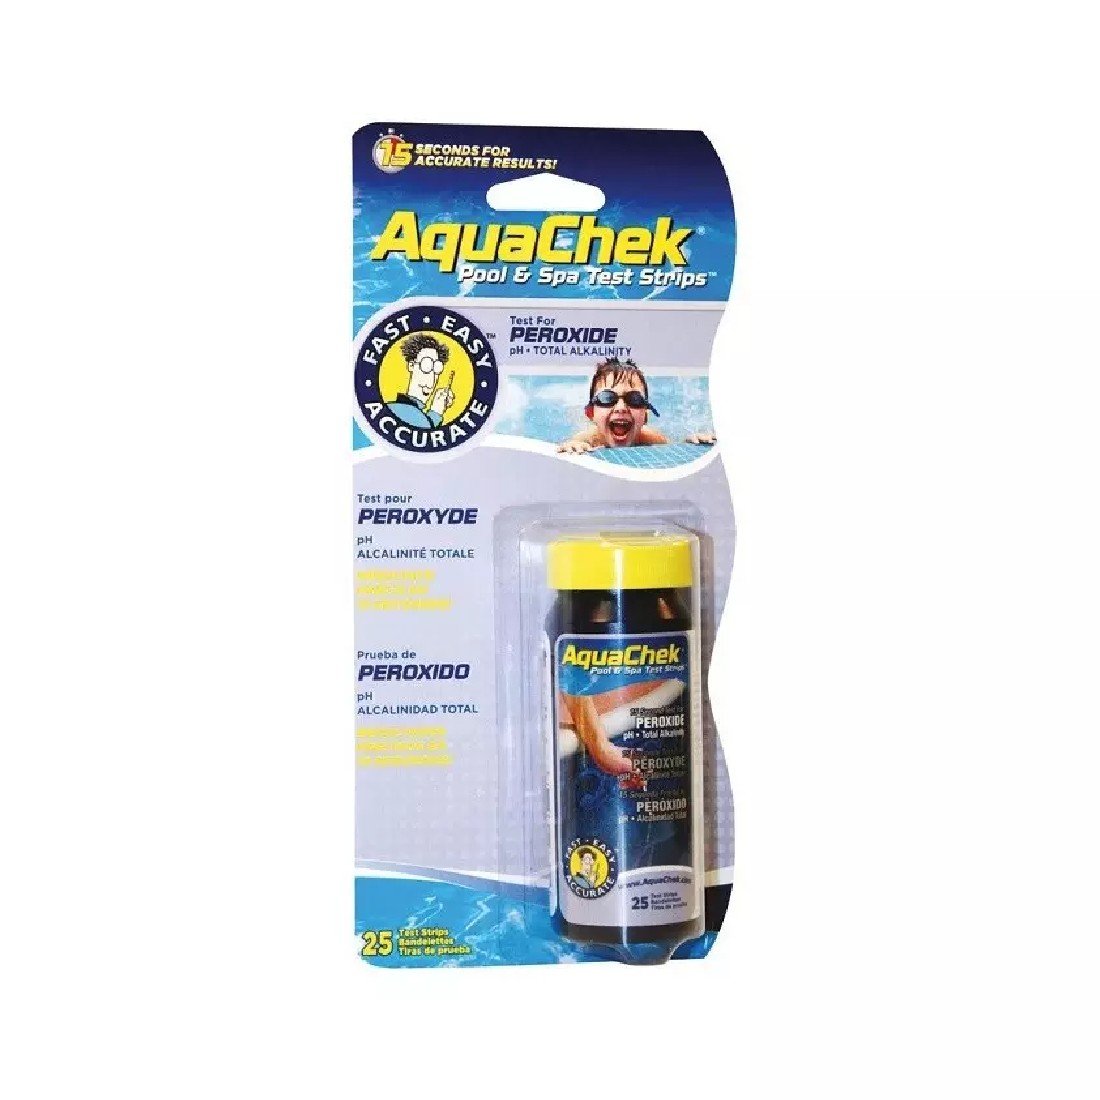 Aquachek Peroxide 3 in 1 - 25 Teststreifen